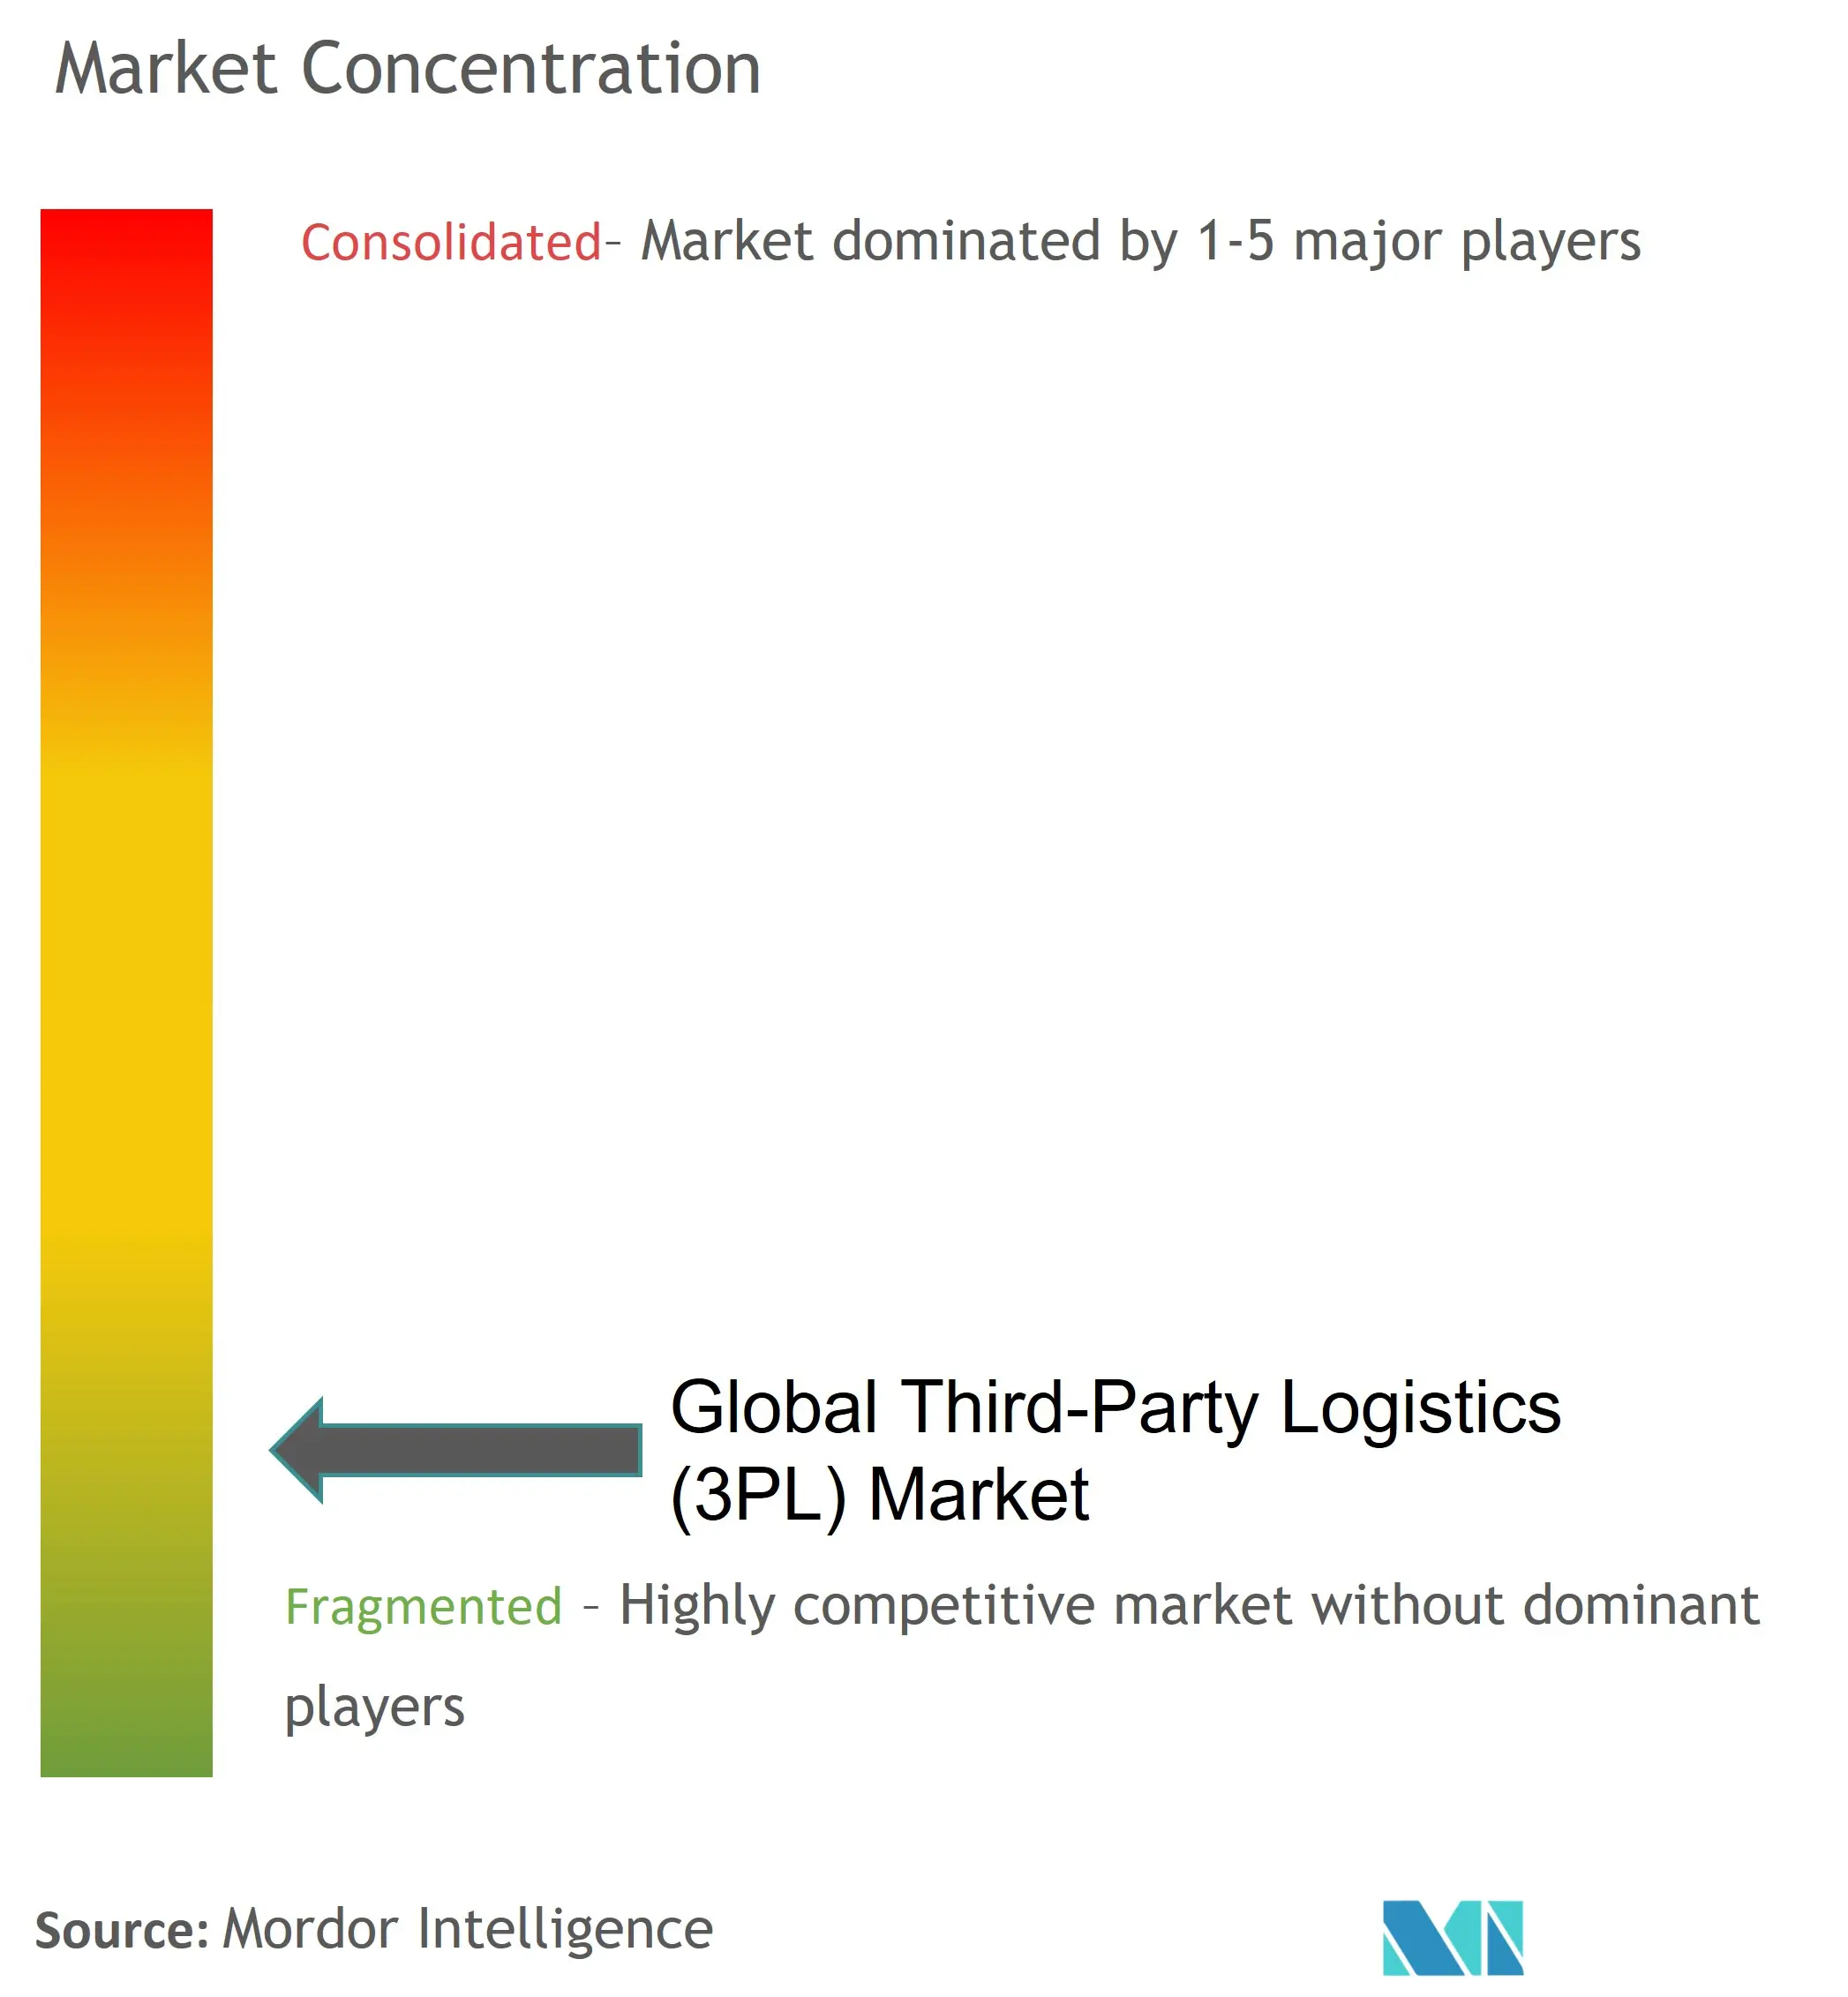 Third-Party Logistics (3PL) Market Concentration